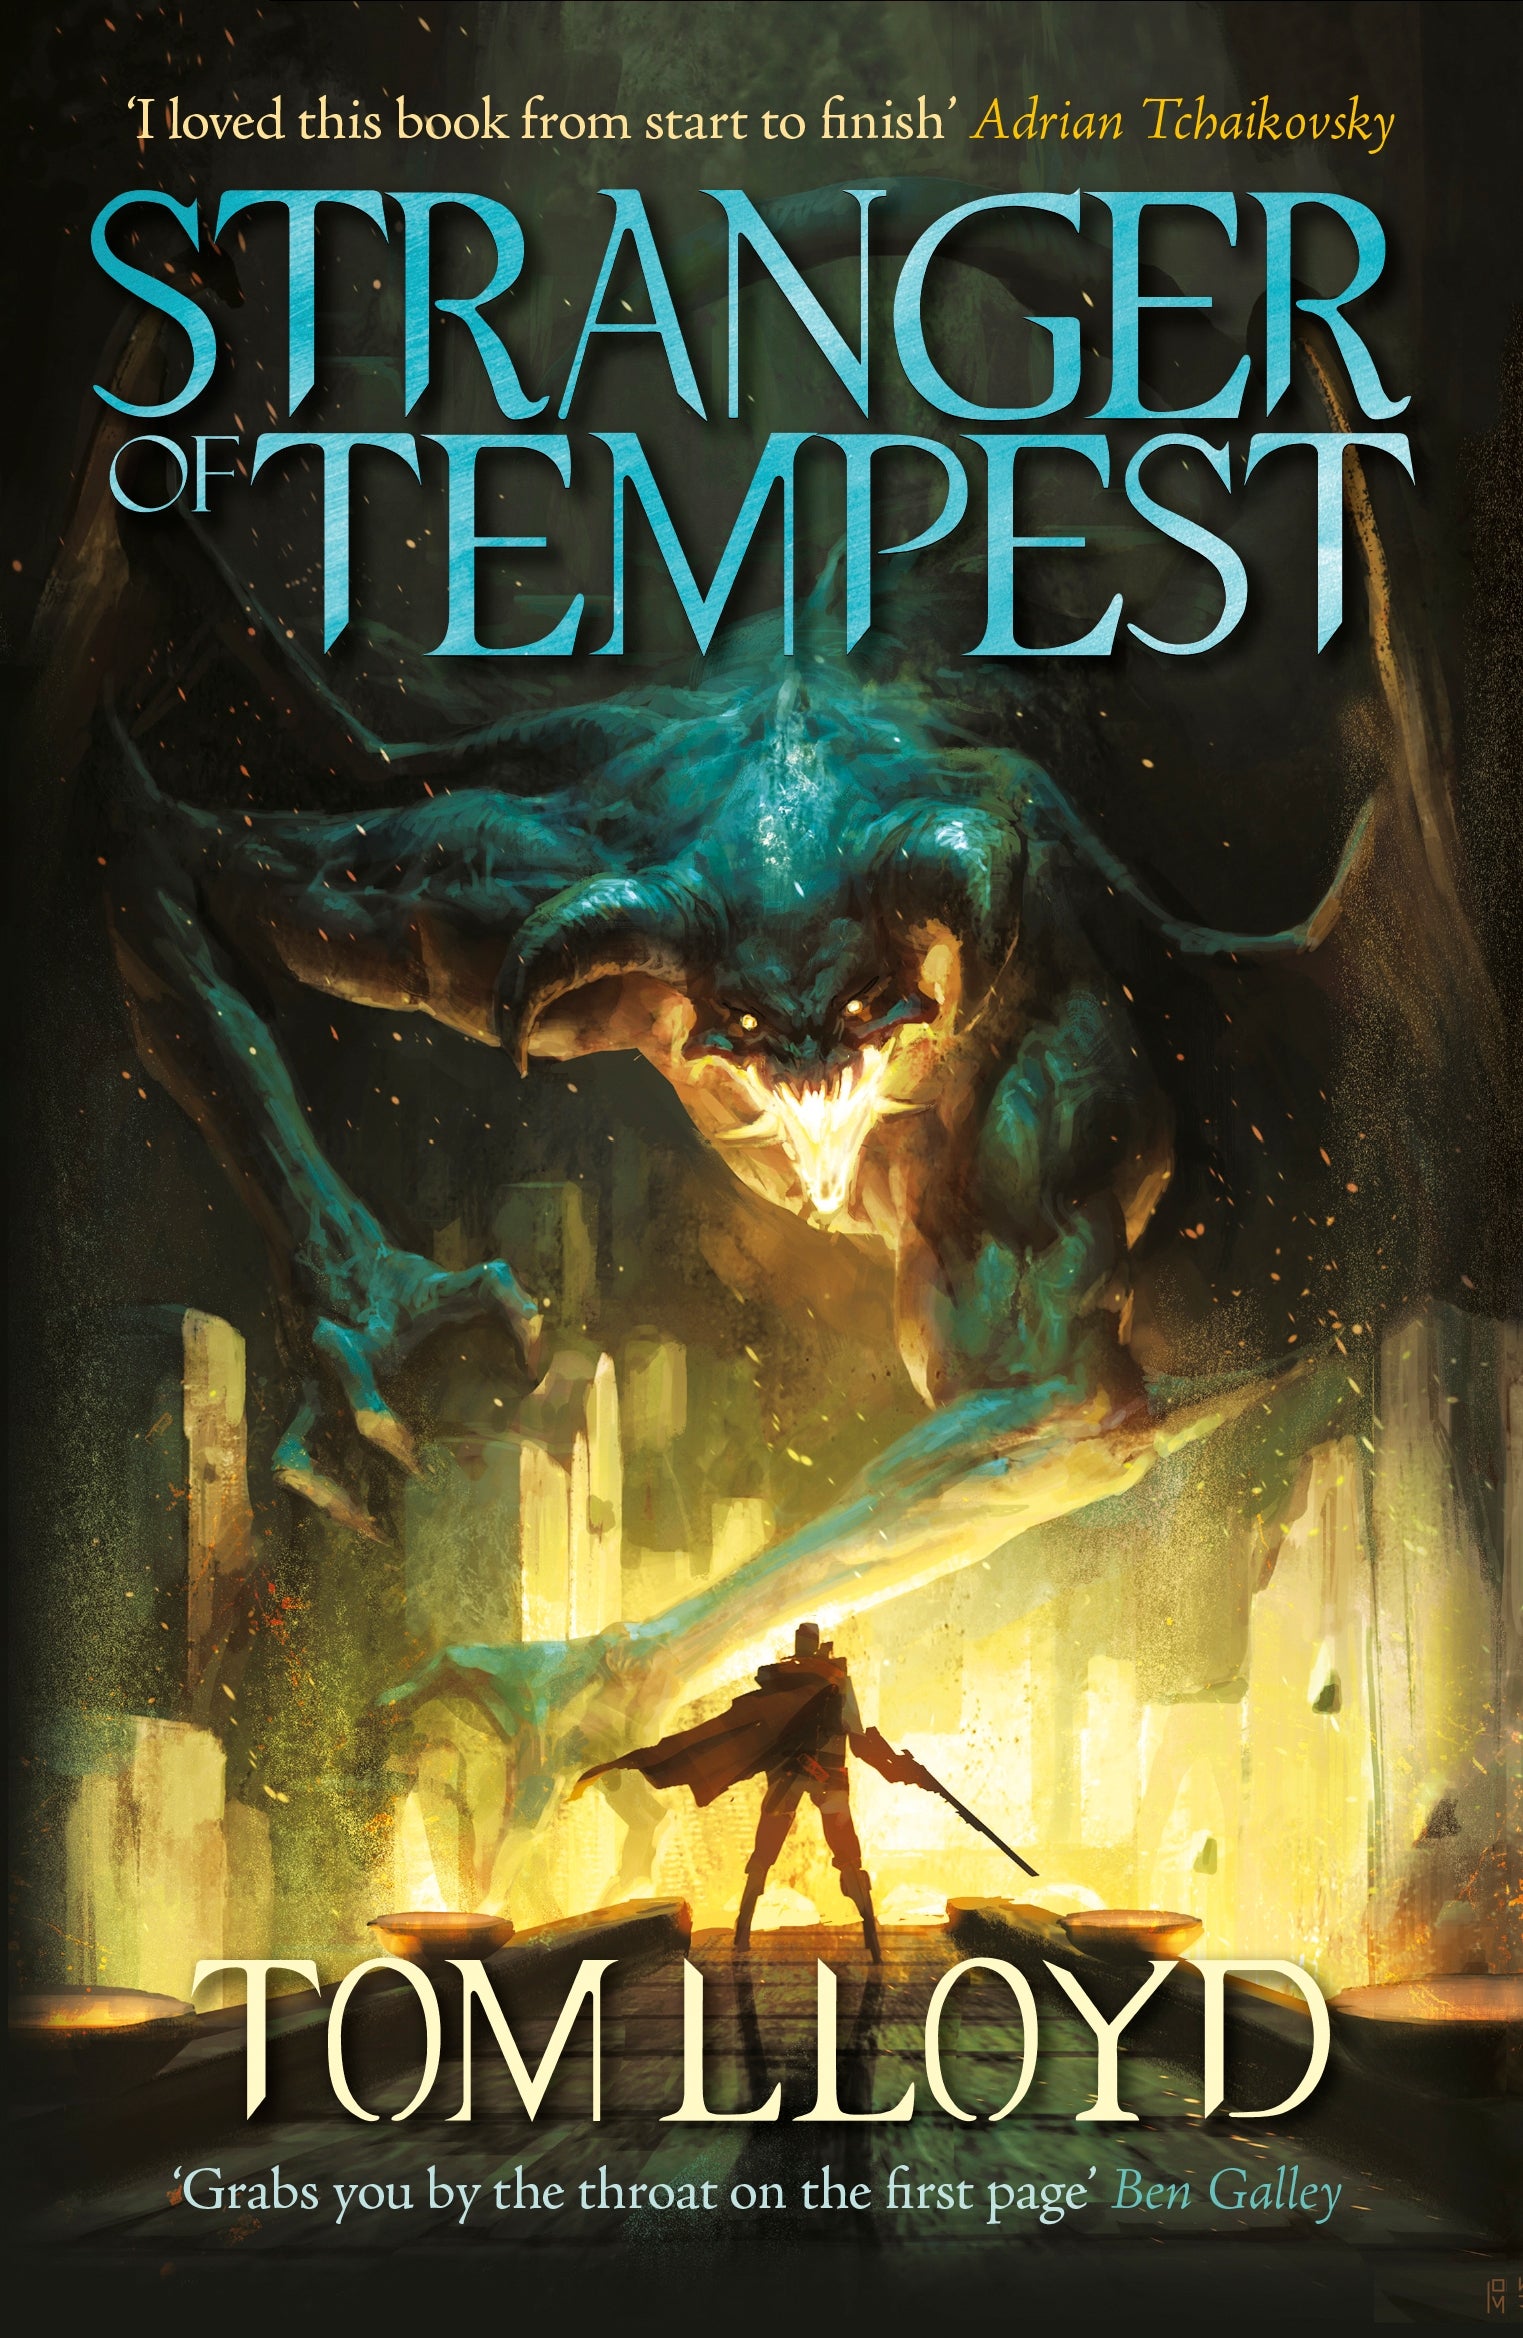 Stranger of Tempest by Tom Lloyd